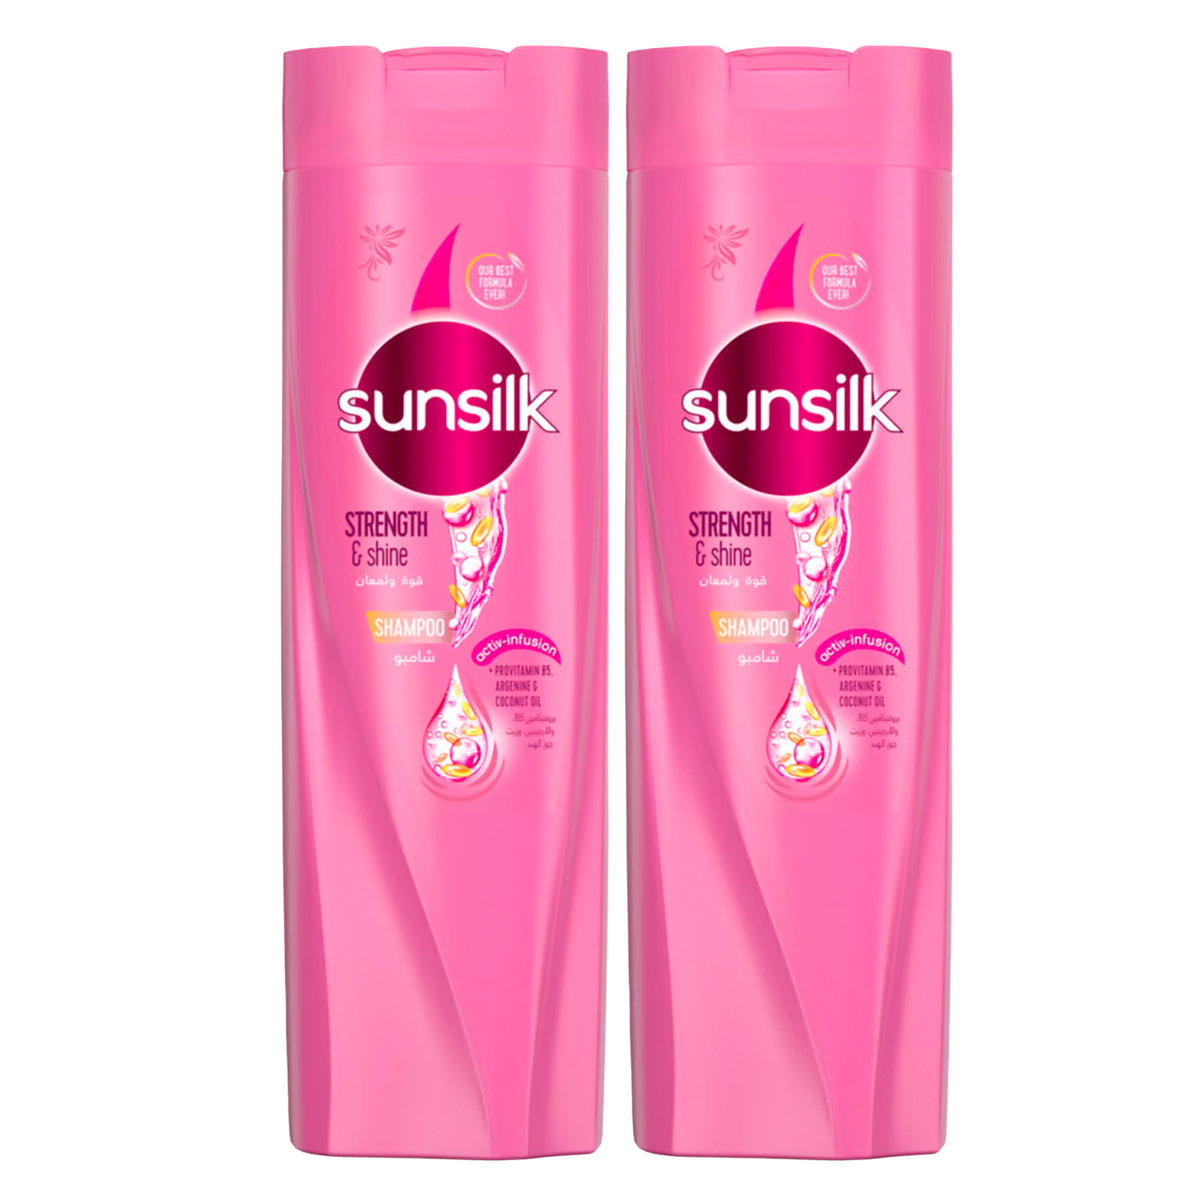 Sunsilk Strength & Shine Shampoo 2 x 400 ml